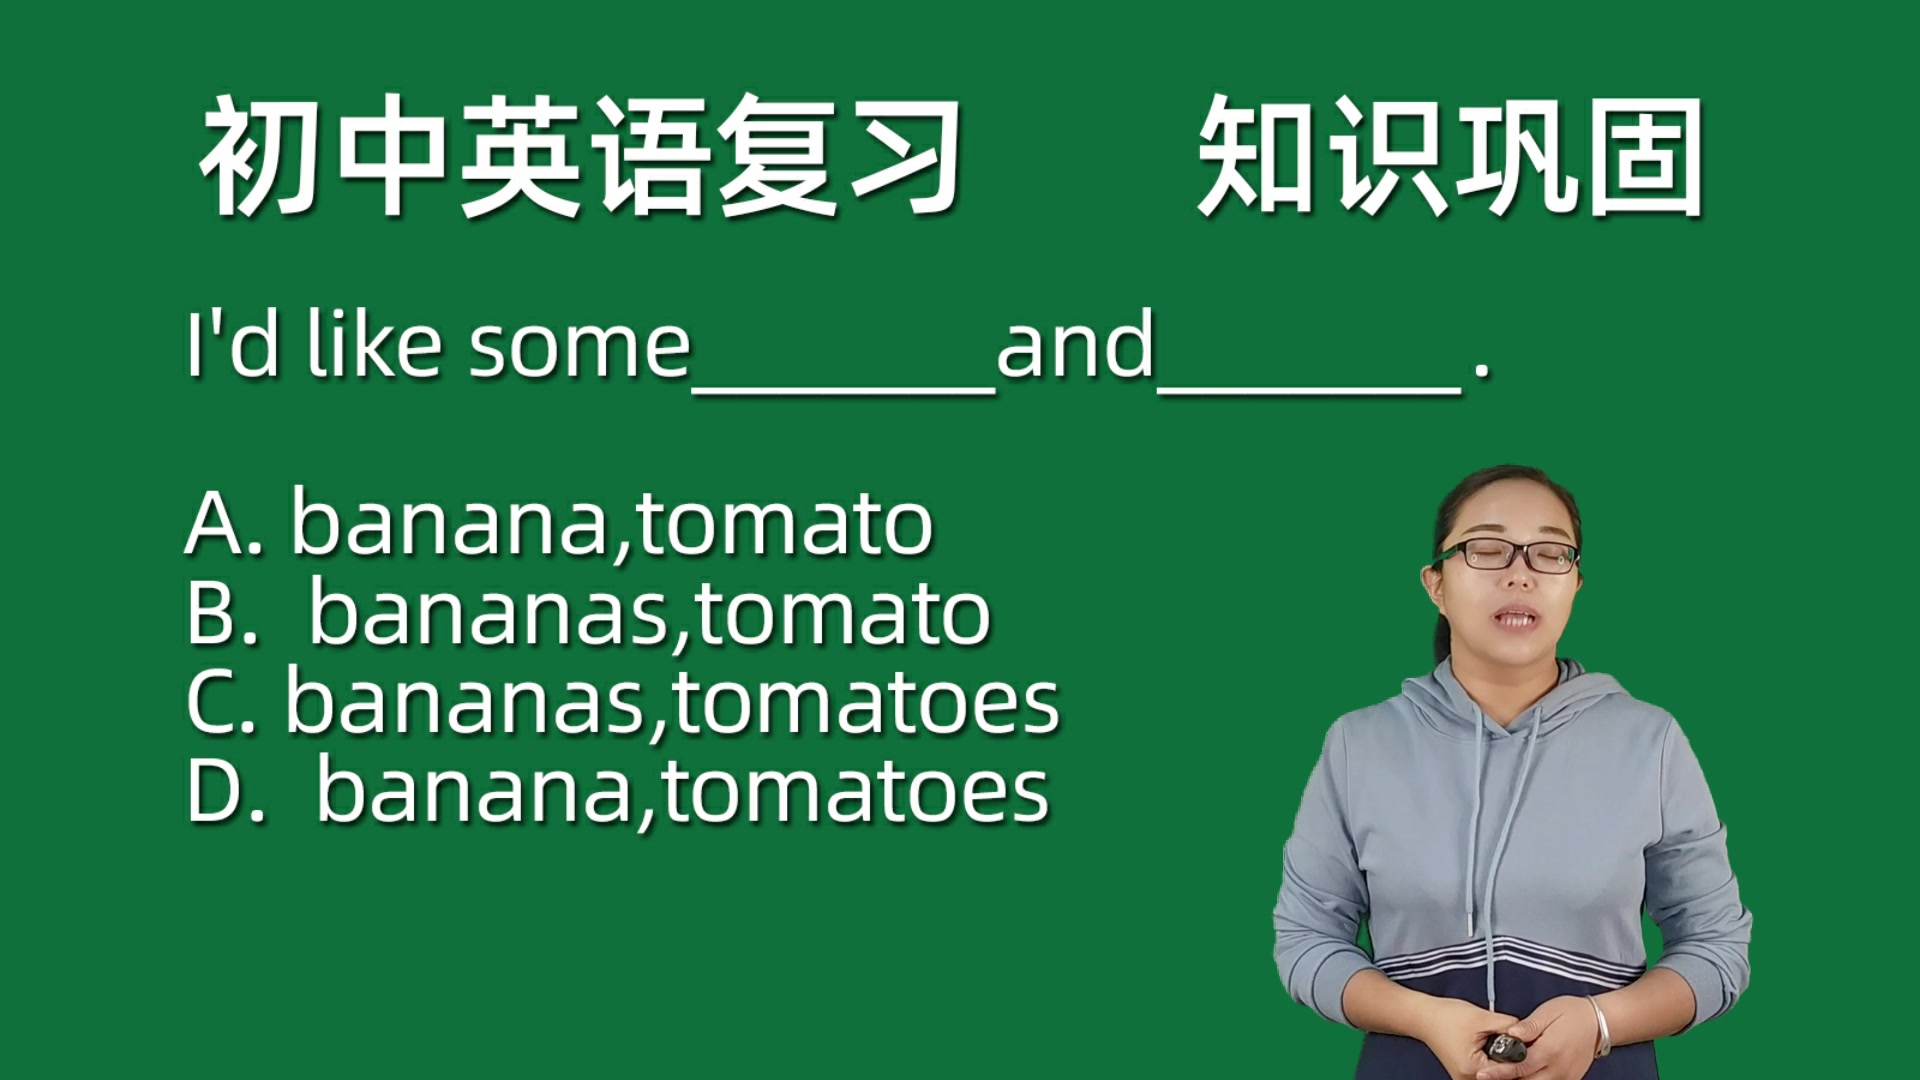 英语名词banana和tomato的复数变化